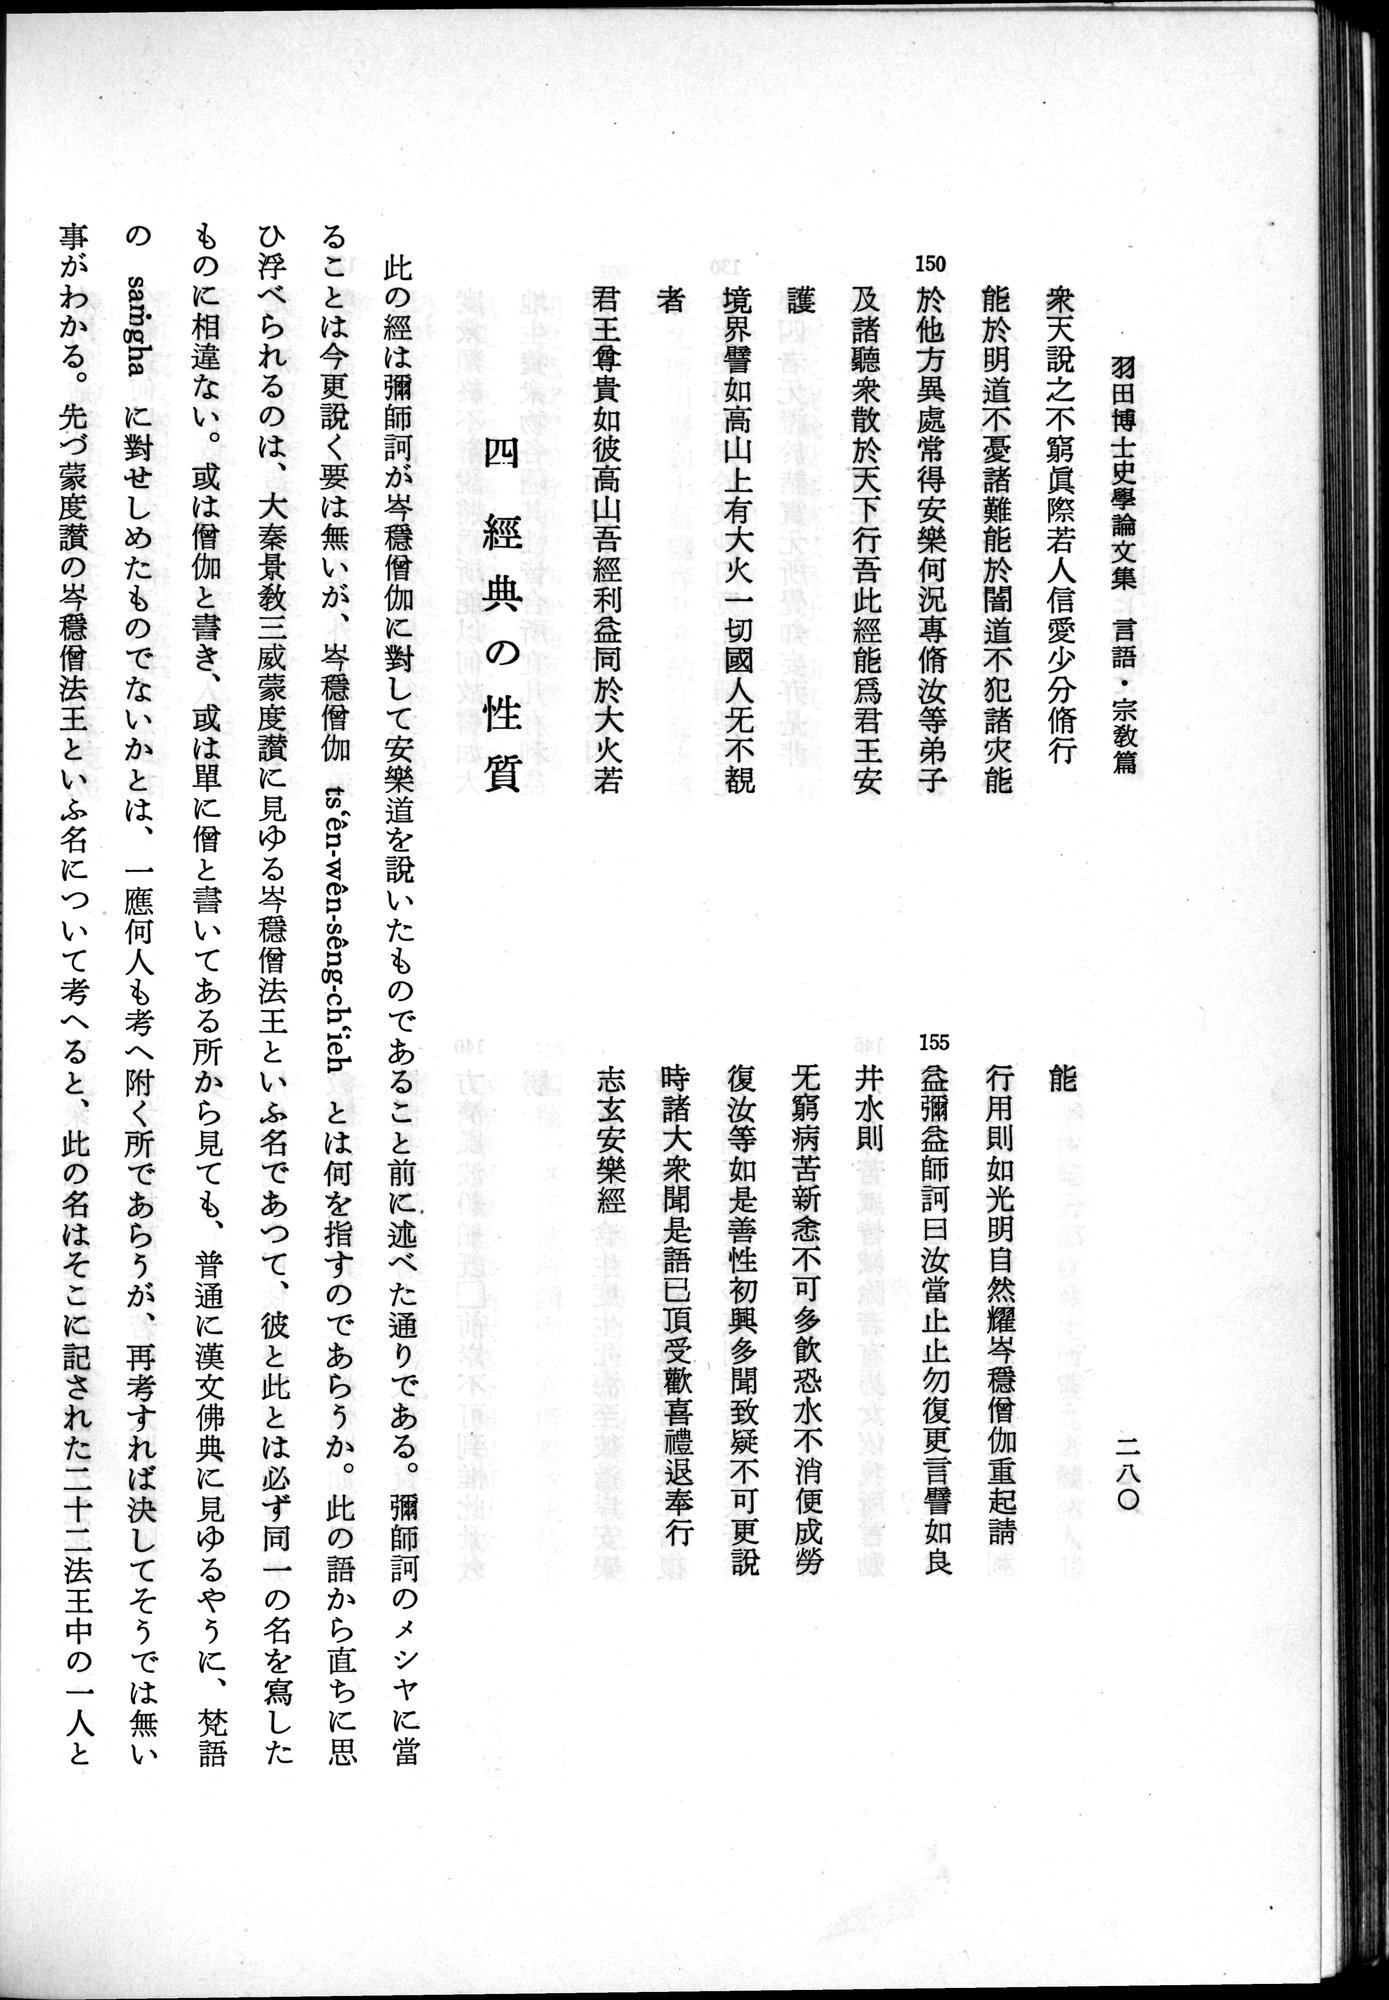 羽田博士史学論文集 : vol.2 / Page 342 (Grayscale High Resolution Image)